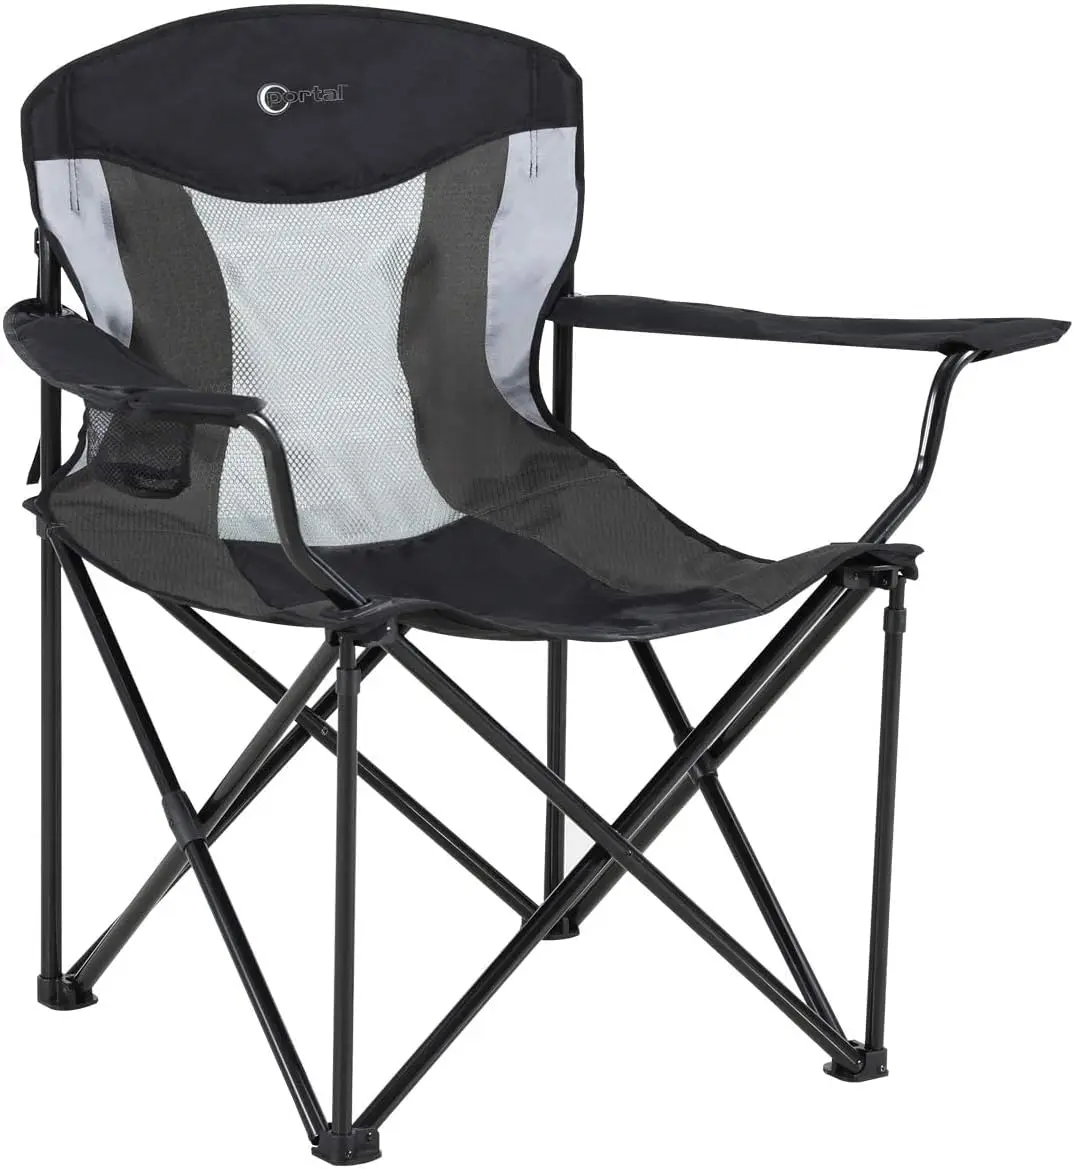 

Большой и высокий складной портативный стул для газона, сверхмощный складной стул XXL для кемпинга на открытом воздухе или для взрослых, поддерживает до 600 фунтов/г